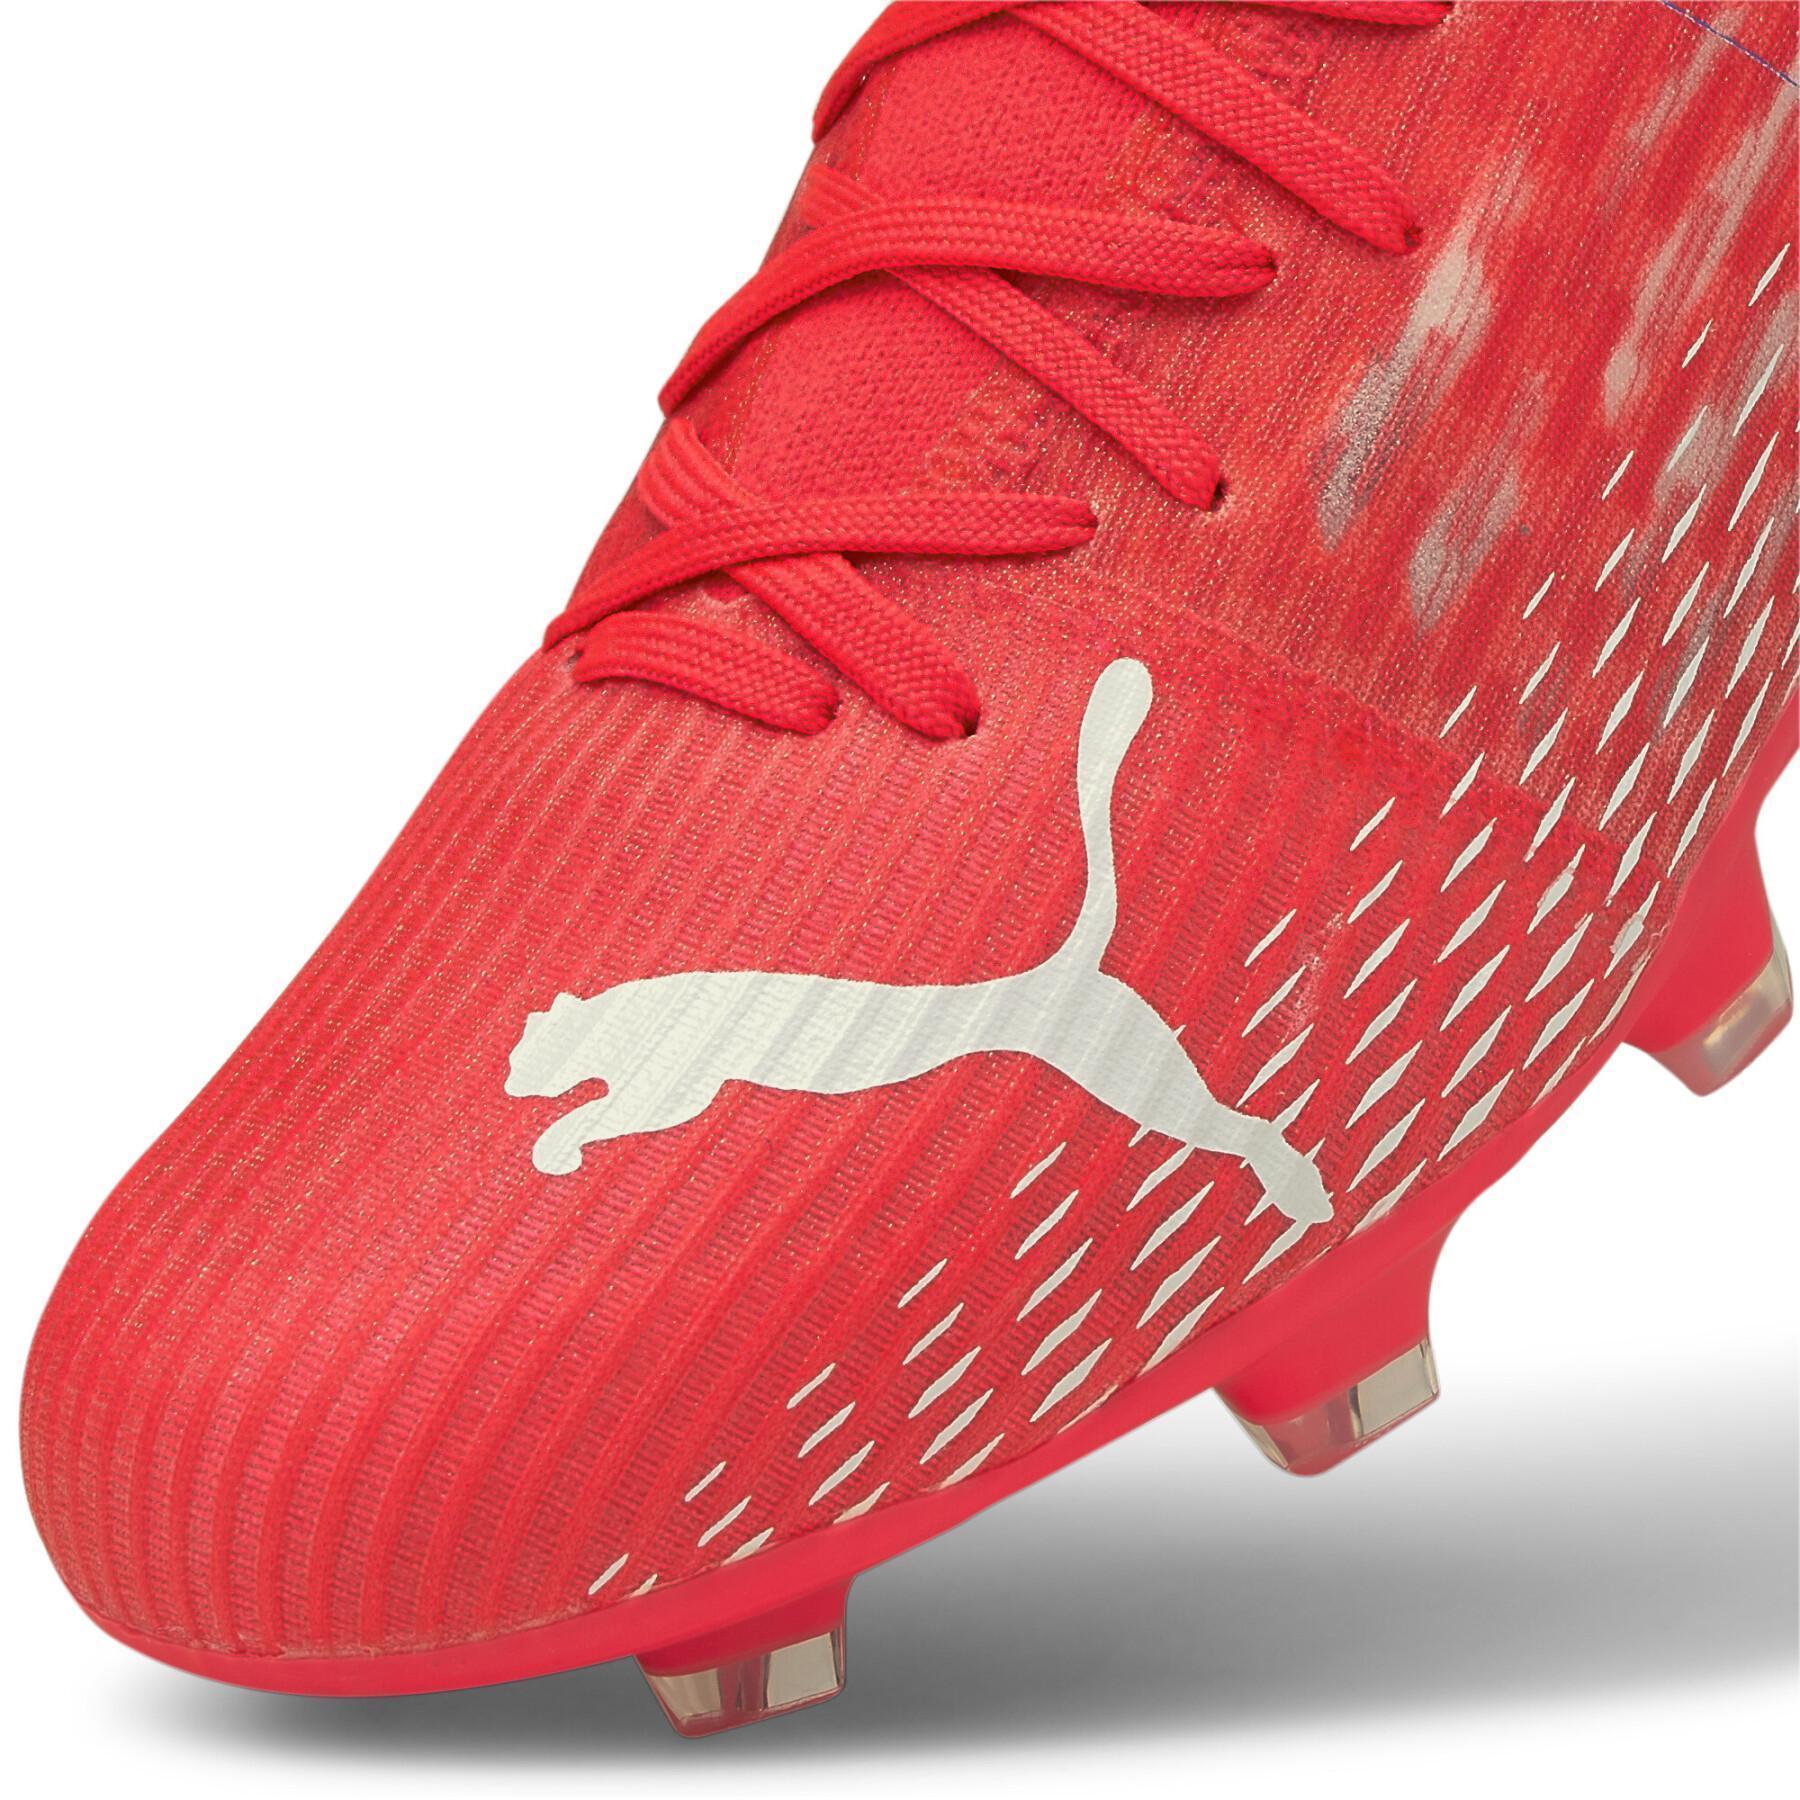 Sapatos de futebol Puma Ultra 3.3 FG/AG